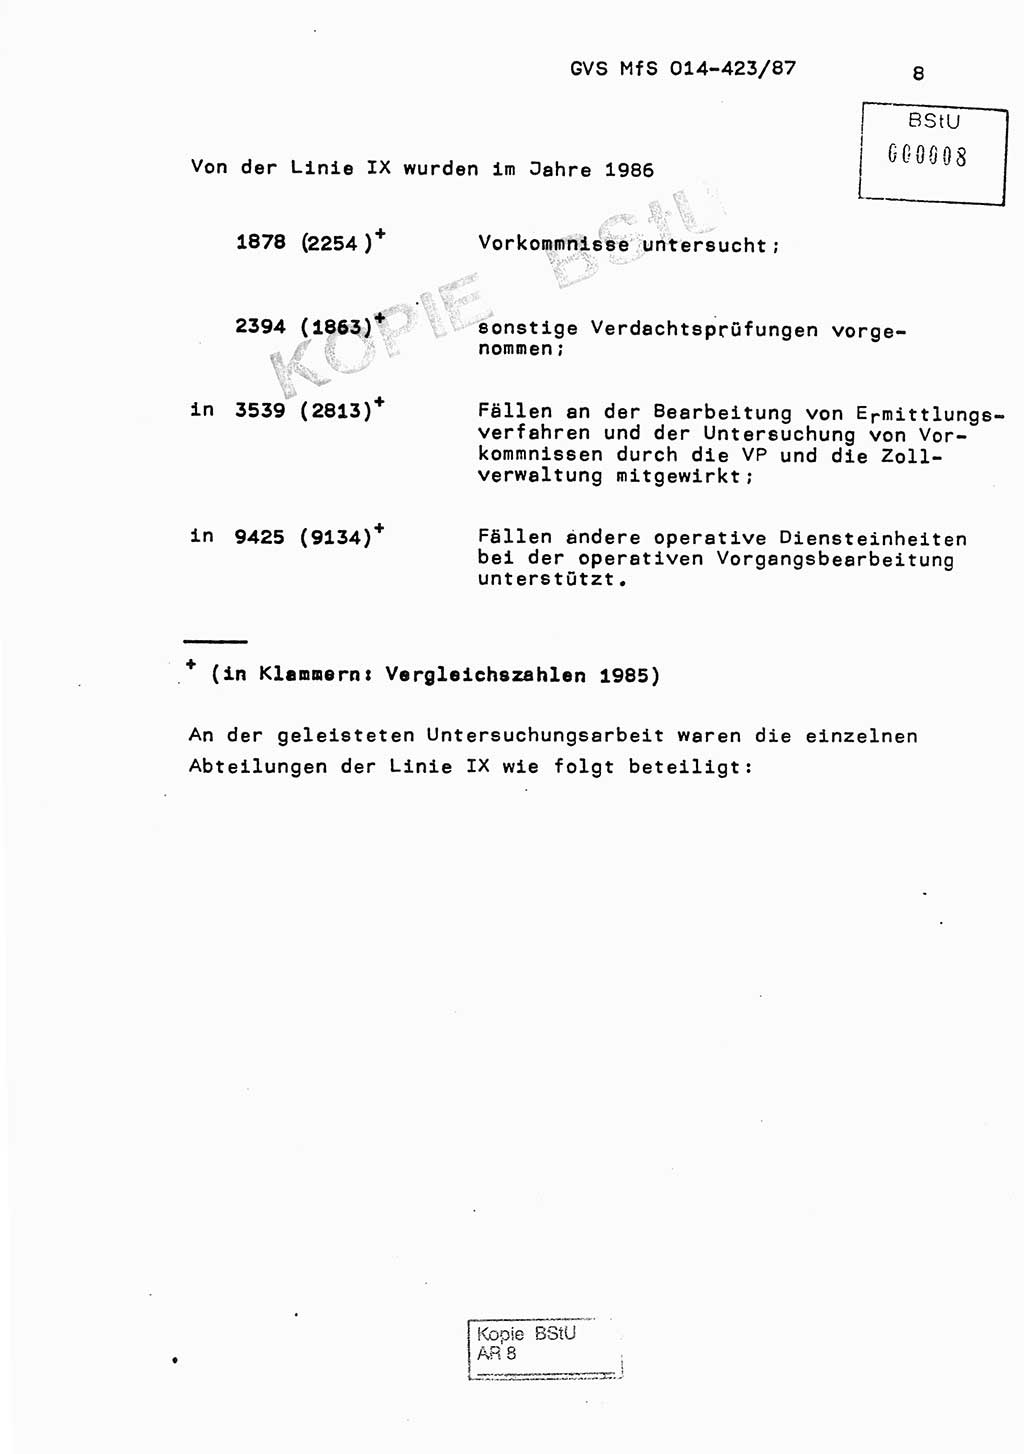 Jahresbericht der Hauptabteilung (HA) Ⅸ 1986, Einschätzung der Wirksamkeit der Untersuchungsarbeit im Jahre 1986, Ministerium für Staatssicherheit (MfS) der Deutschen Demokratischen Republik (DDR), Hauptabteilung Ⅸ, Geheime Verschlußsache (GVS) o014-423/87, Berlin 1987, Seite 8 (Einsch. MfS DDR HA Ⅸ GVS o014-423/87 1986, S. 8)